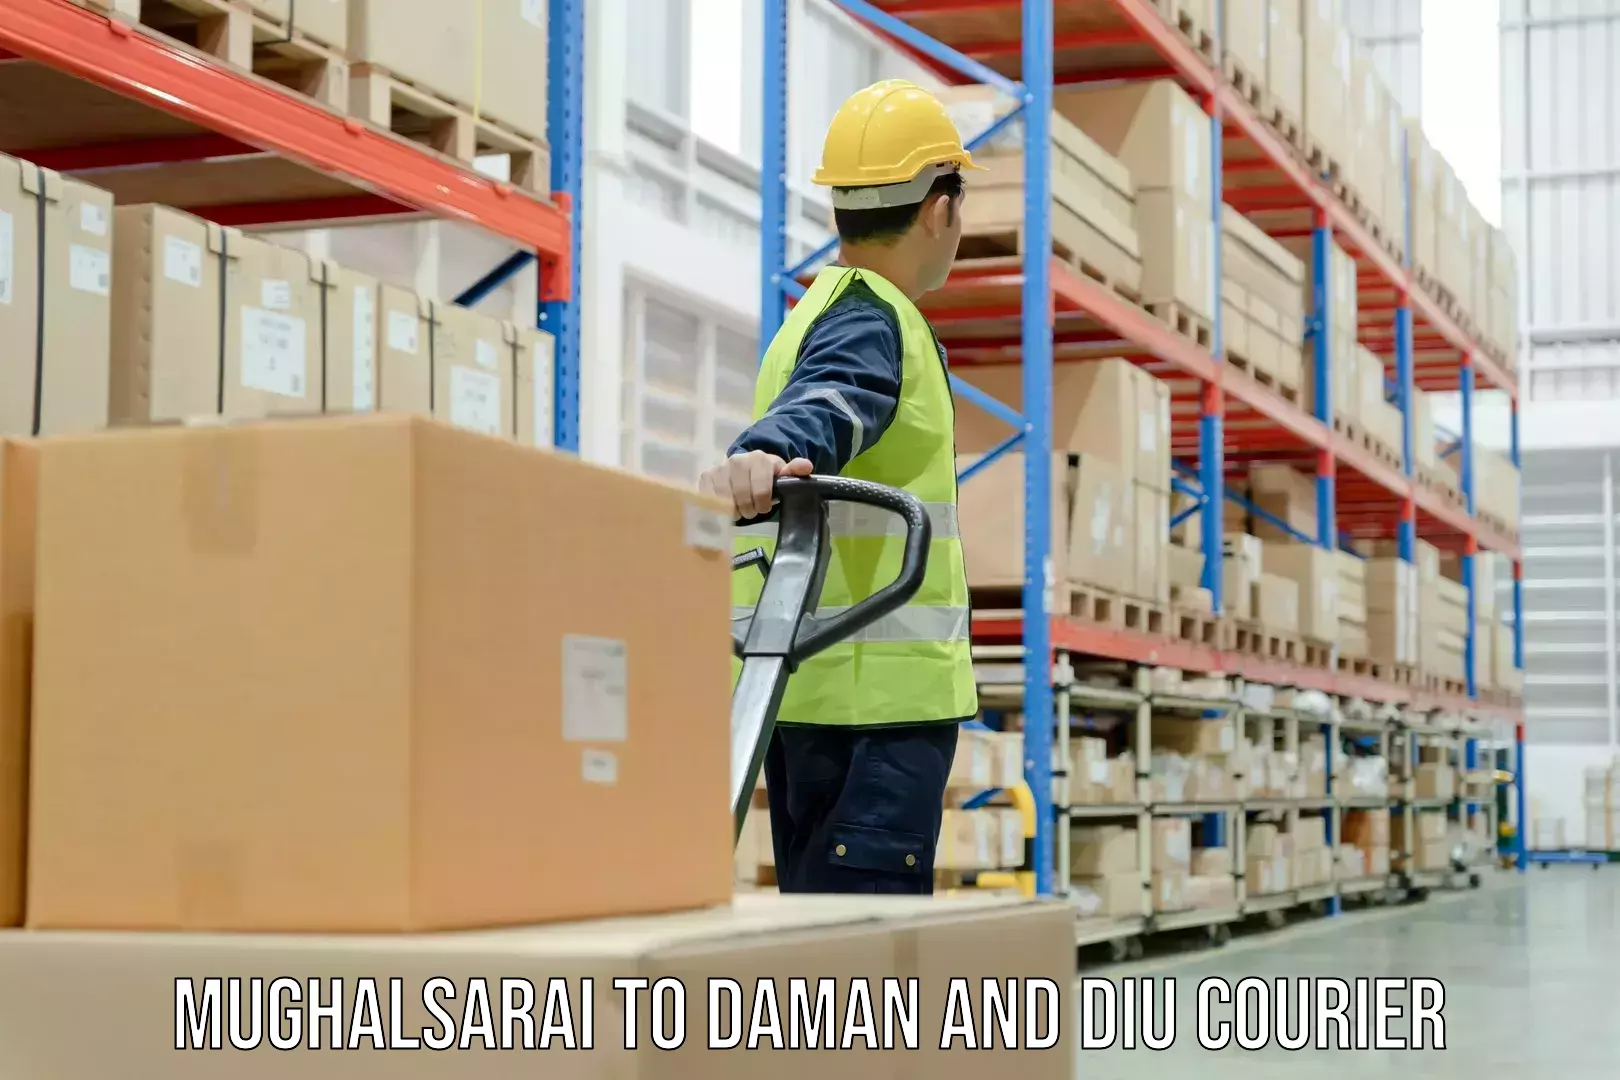 Fast shipping solutions Mughalsarai to Diu